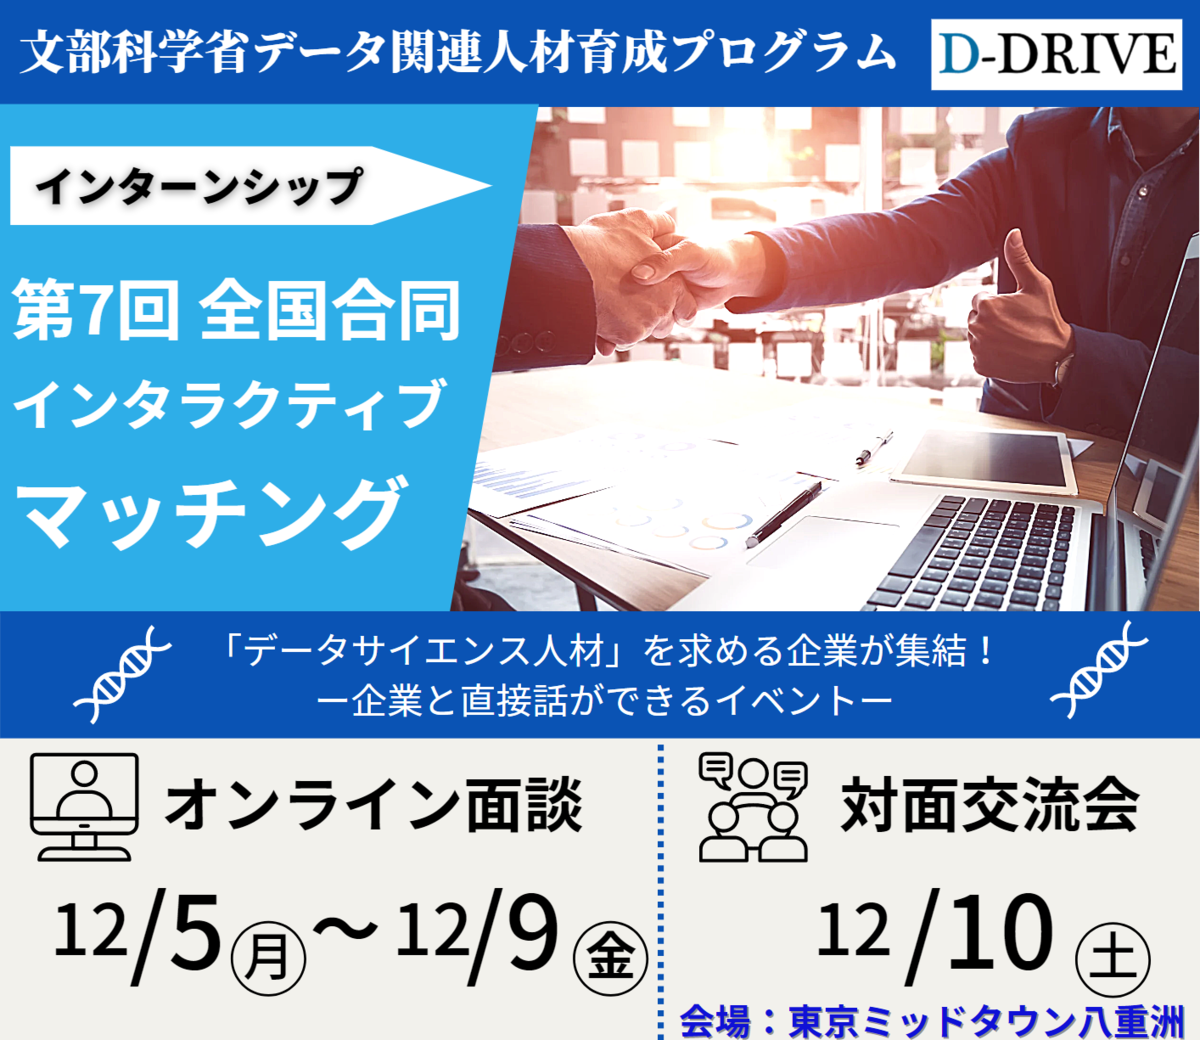 【文科省D-DRIVE】企業向けイベント説明会：データサイエンス人材・インターンシップマッチングイベント